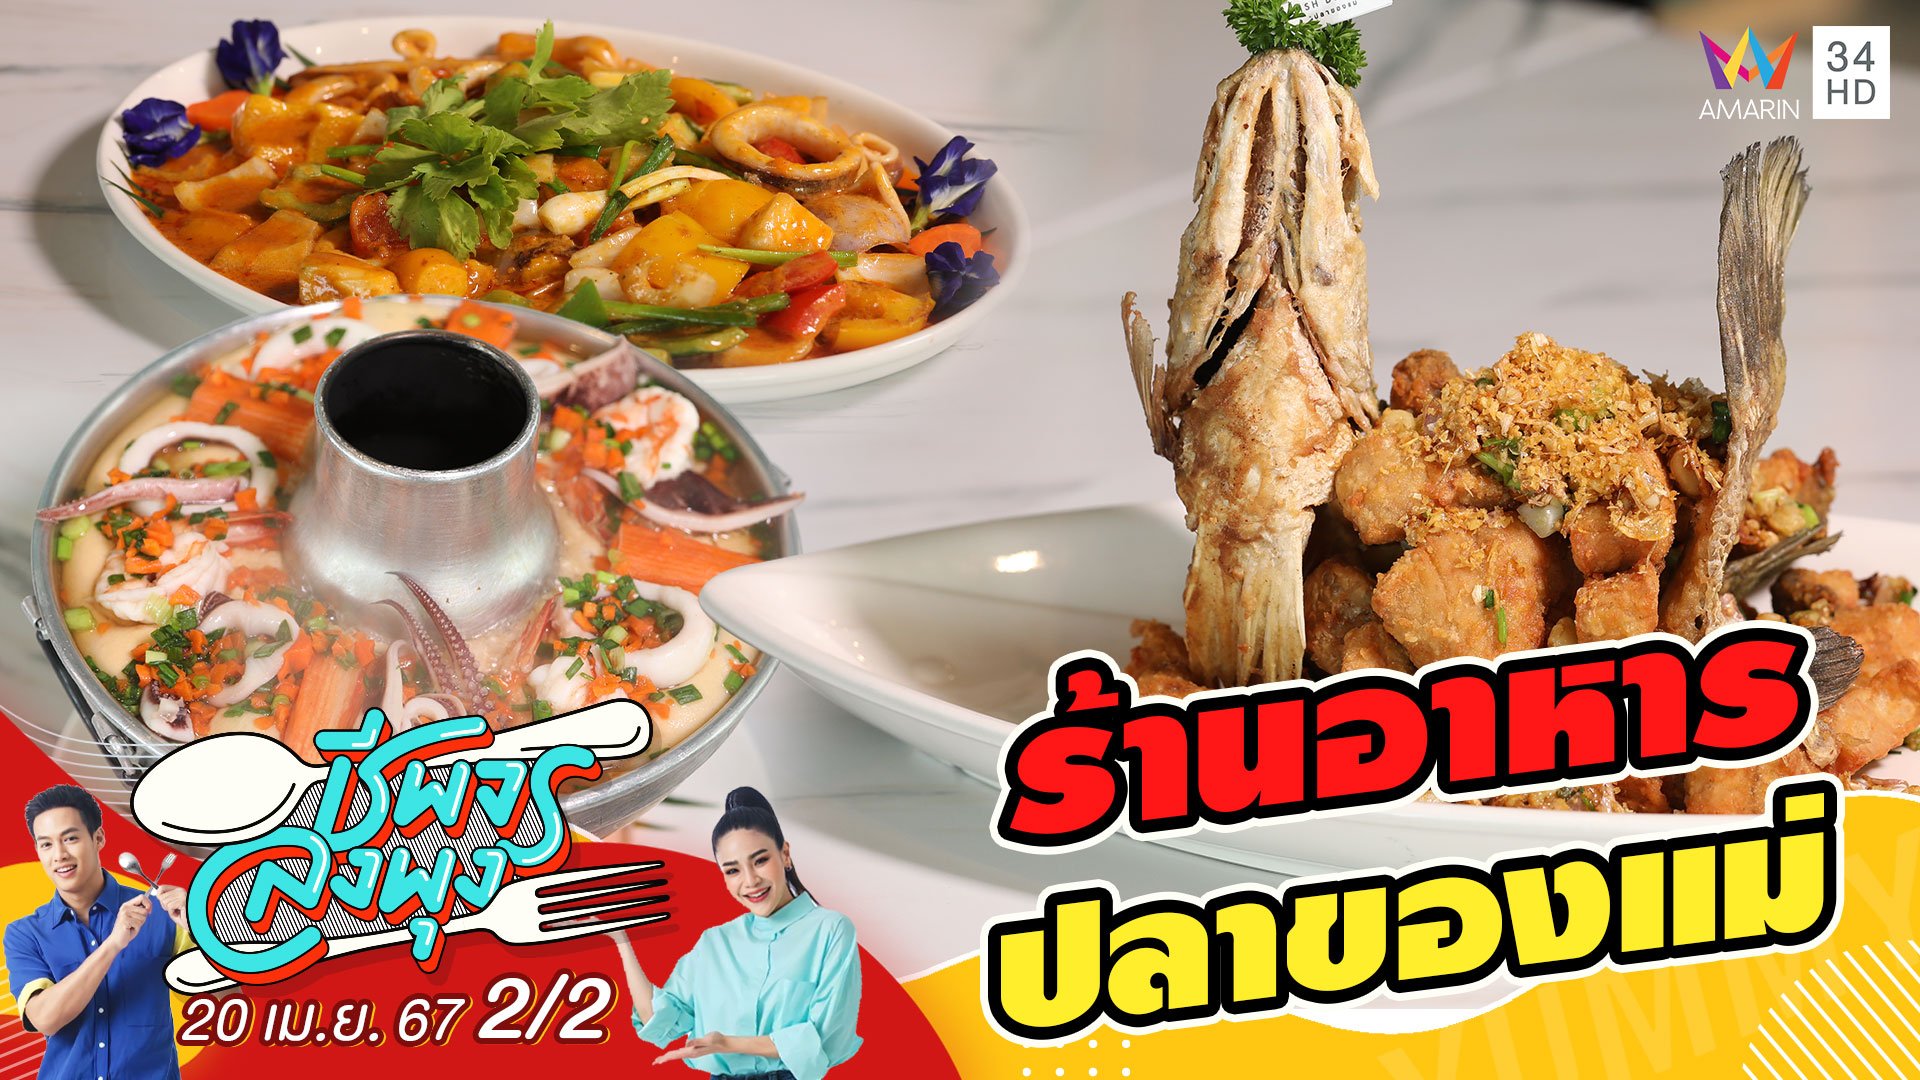 "ร้านอาหารปลาของแม่" ร้านอาหารที่รวมหลากหลายเมนู  | ชีพจรลงพุง | 20 เม.ย. 67 (2/2) | AMARIN TVHD34